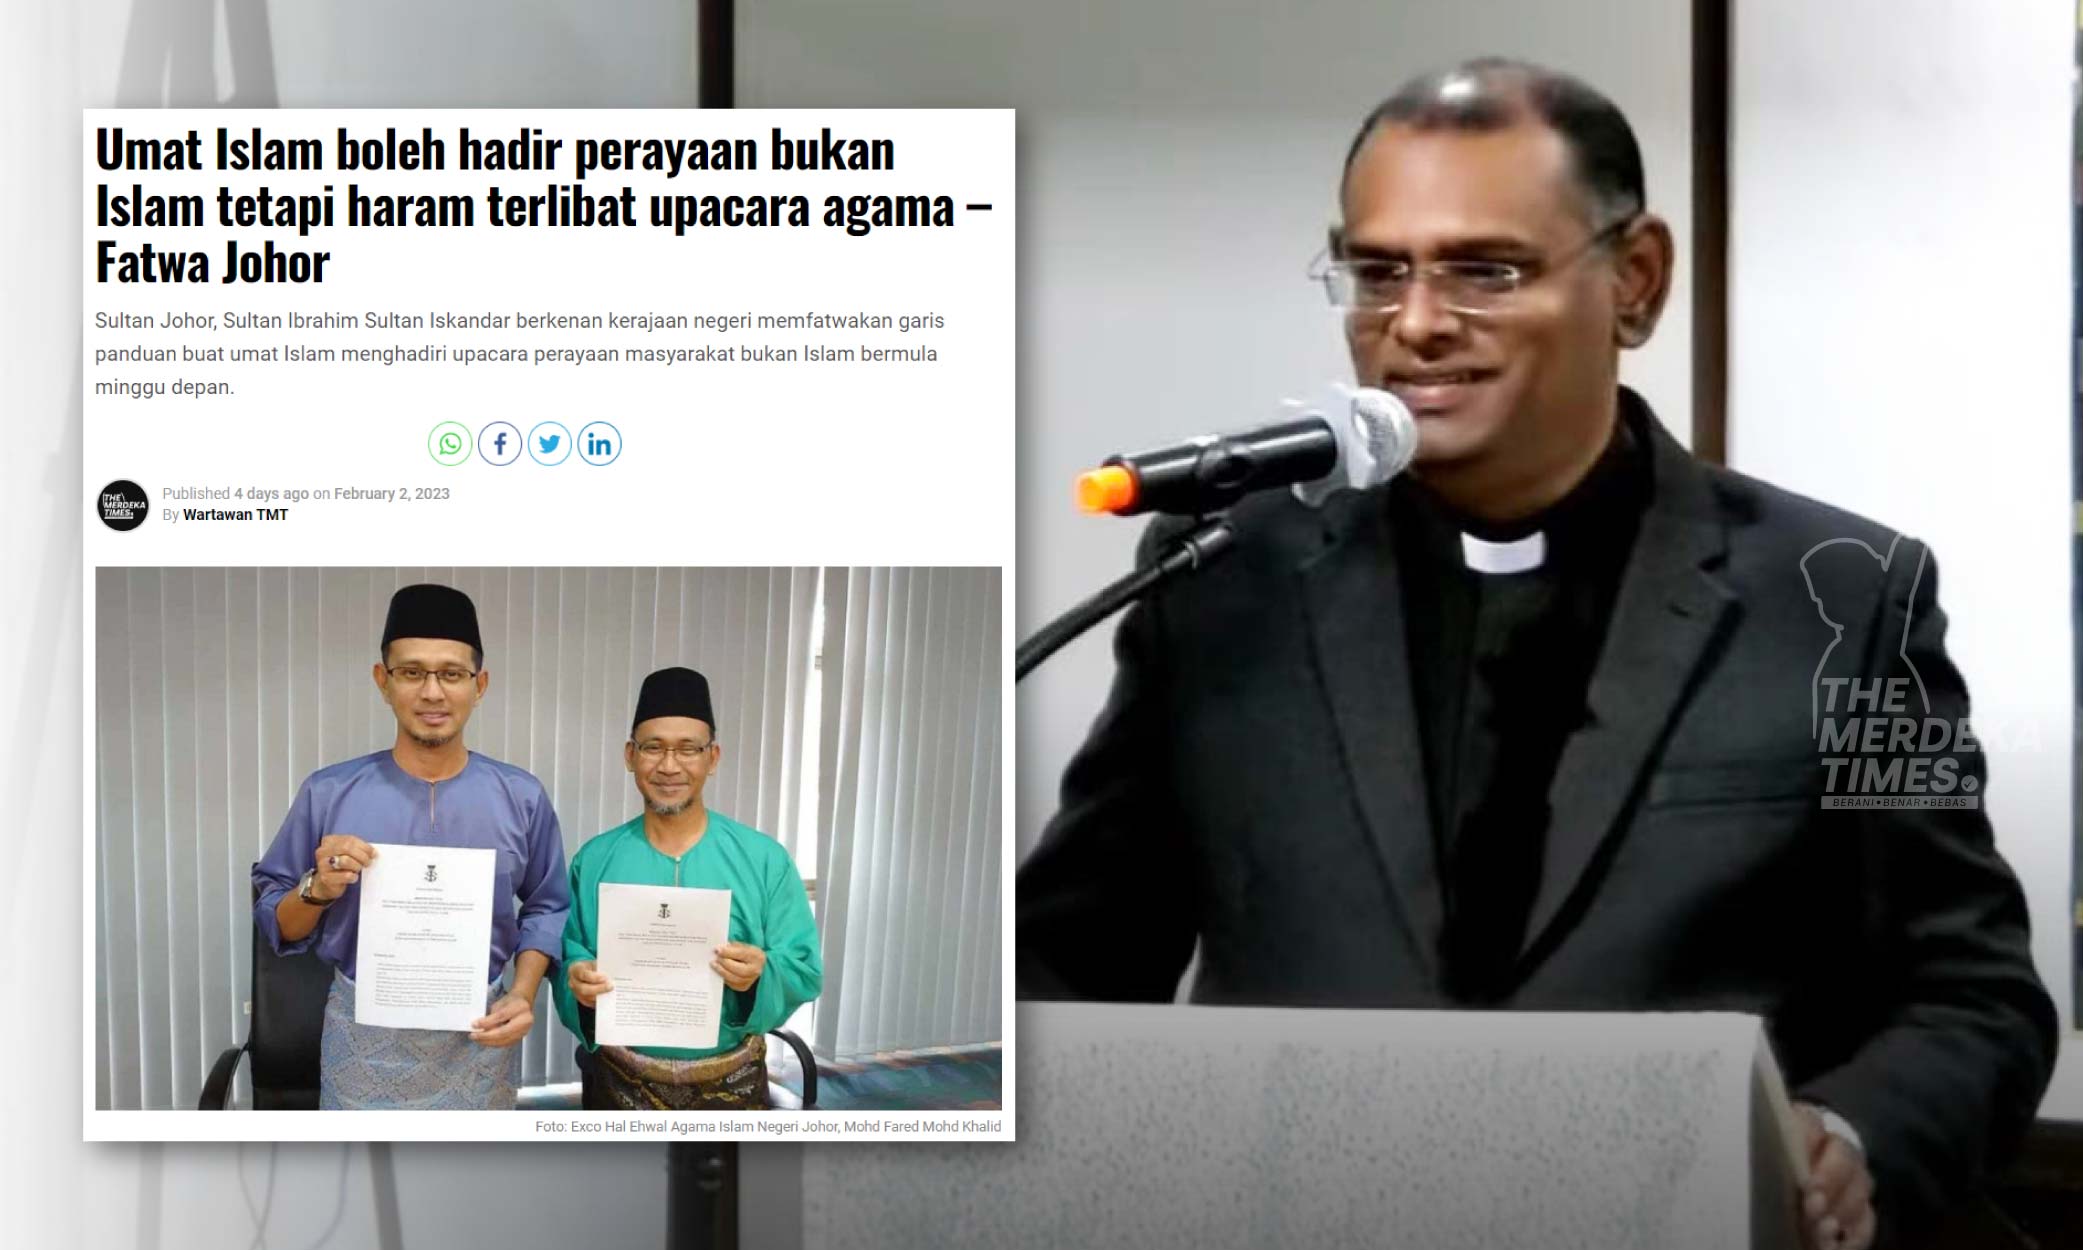 Fatwa Johor panduan yang baik - Majlis Gereja Malaysia